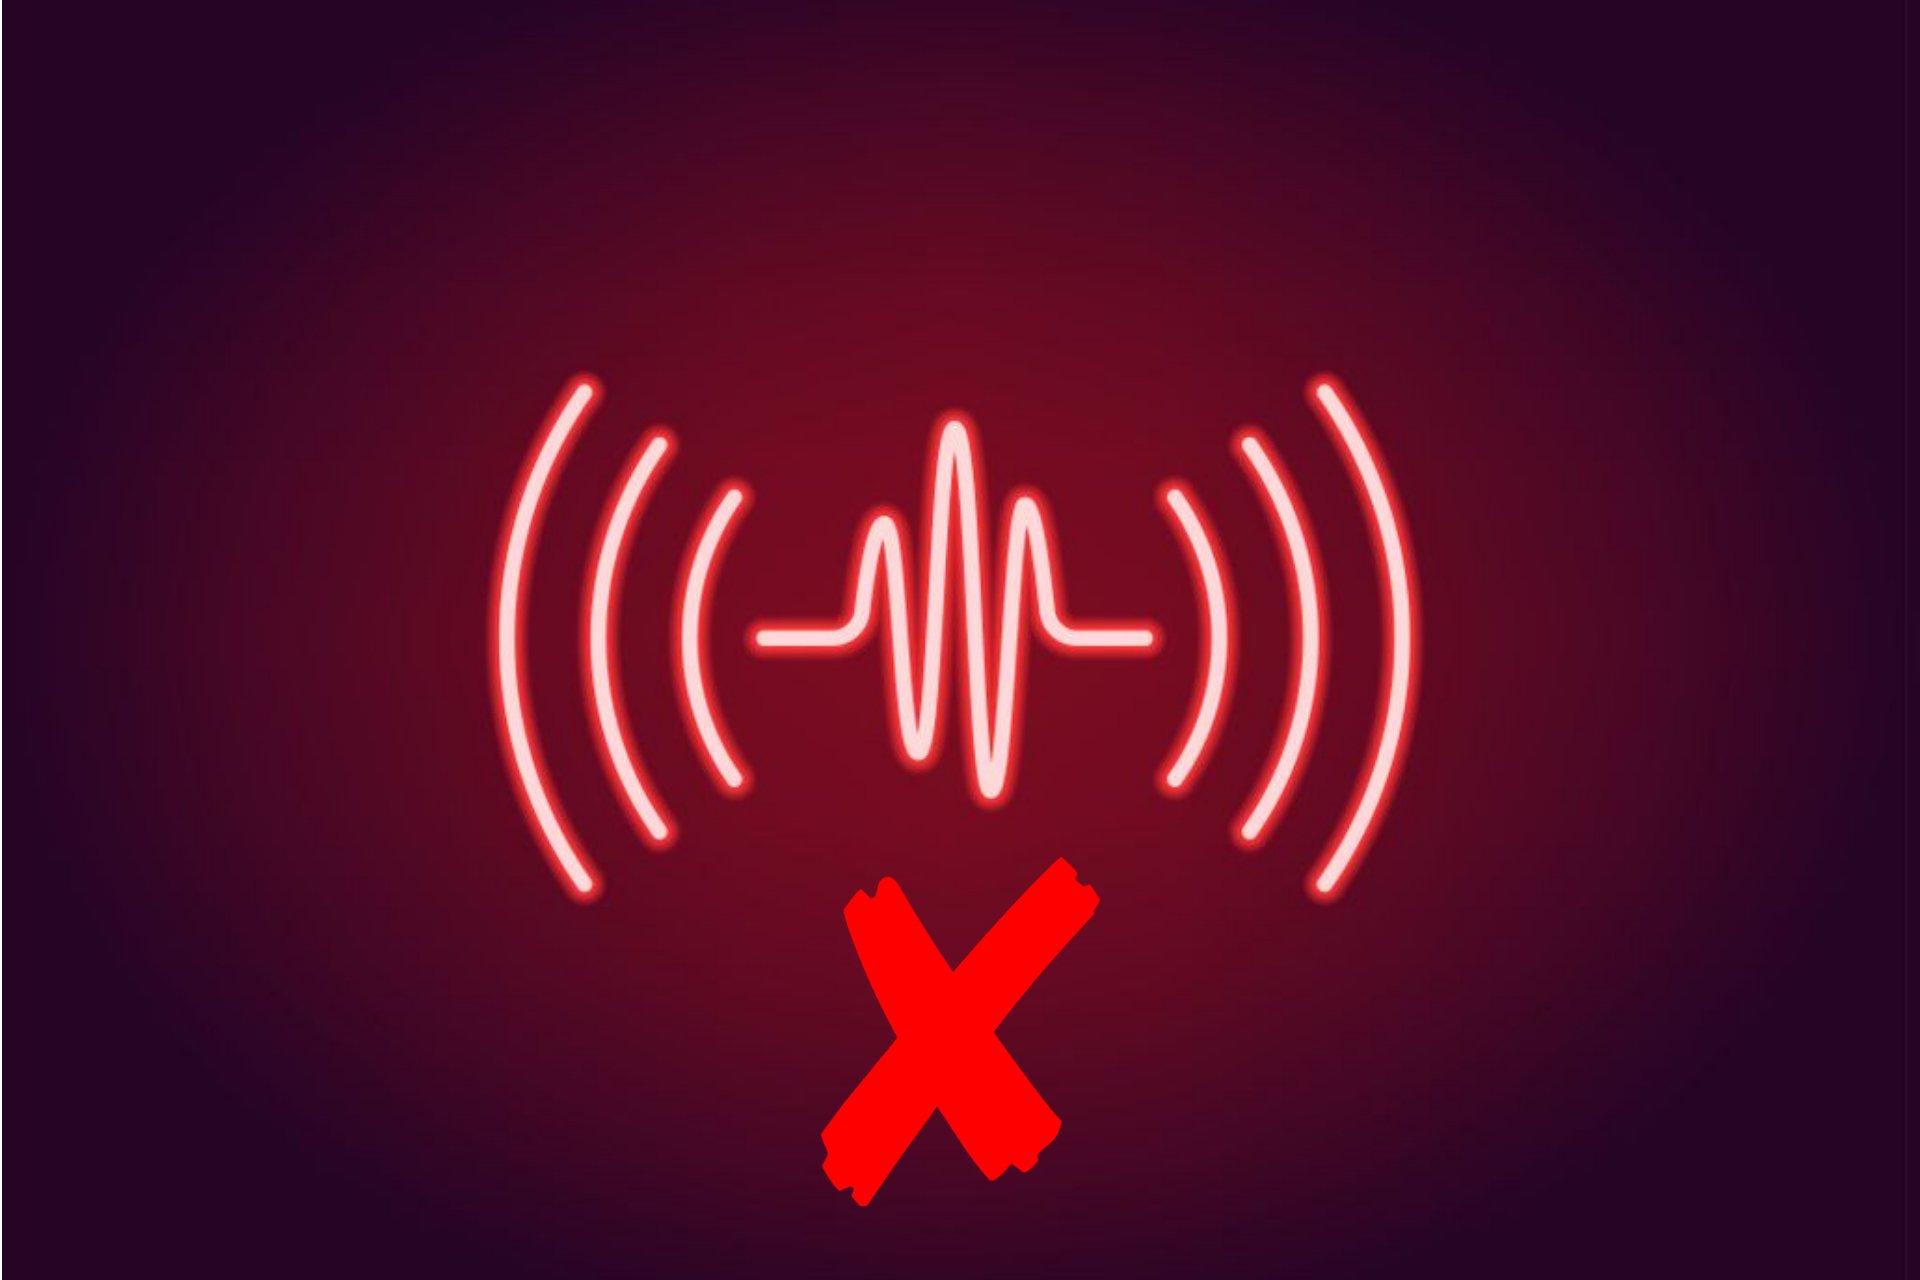 sound icon red x windows 10, 8.1, 8